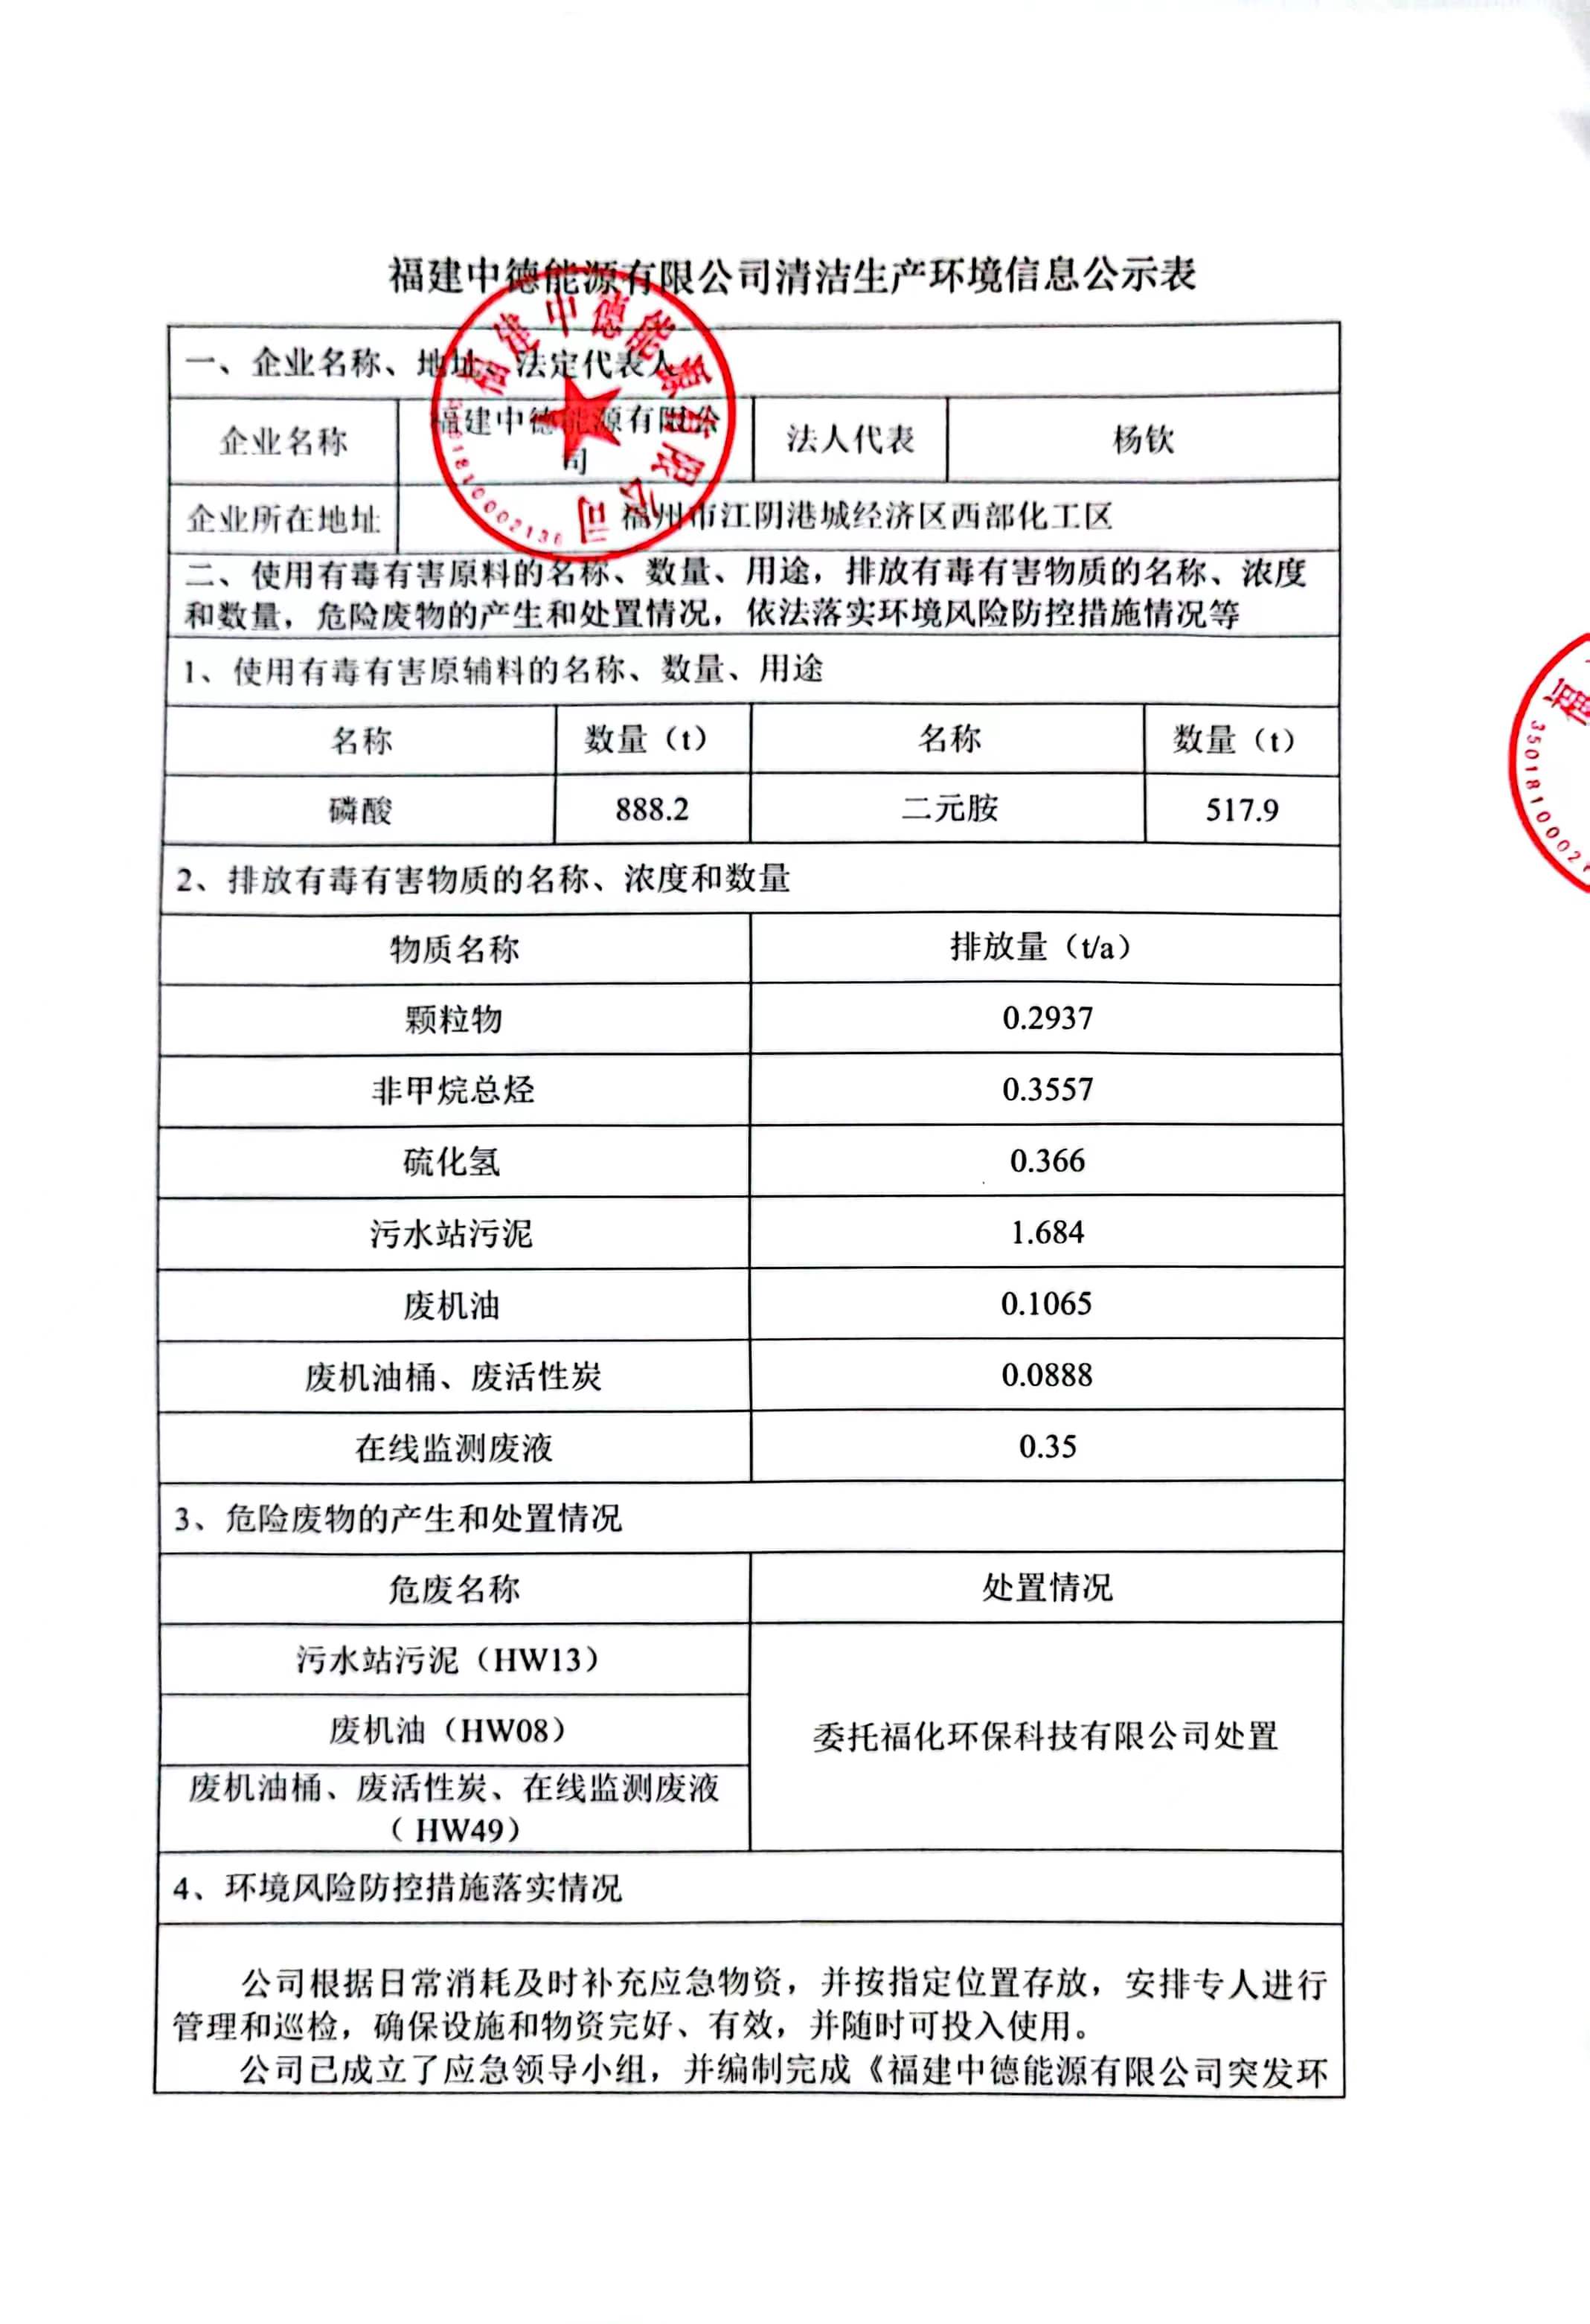 腾博官方诚信唯一网站游戏清洁生产环境信息公示表